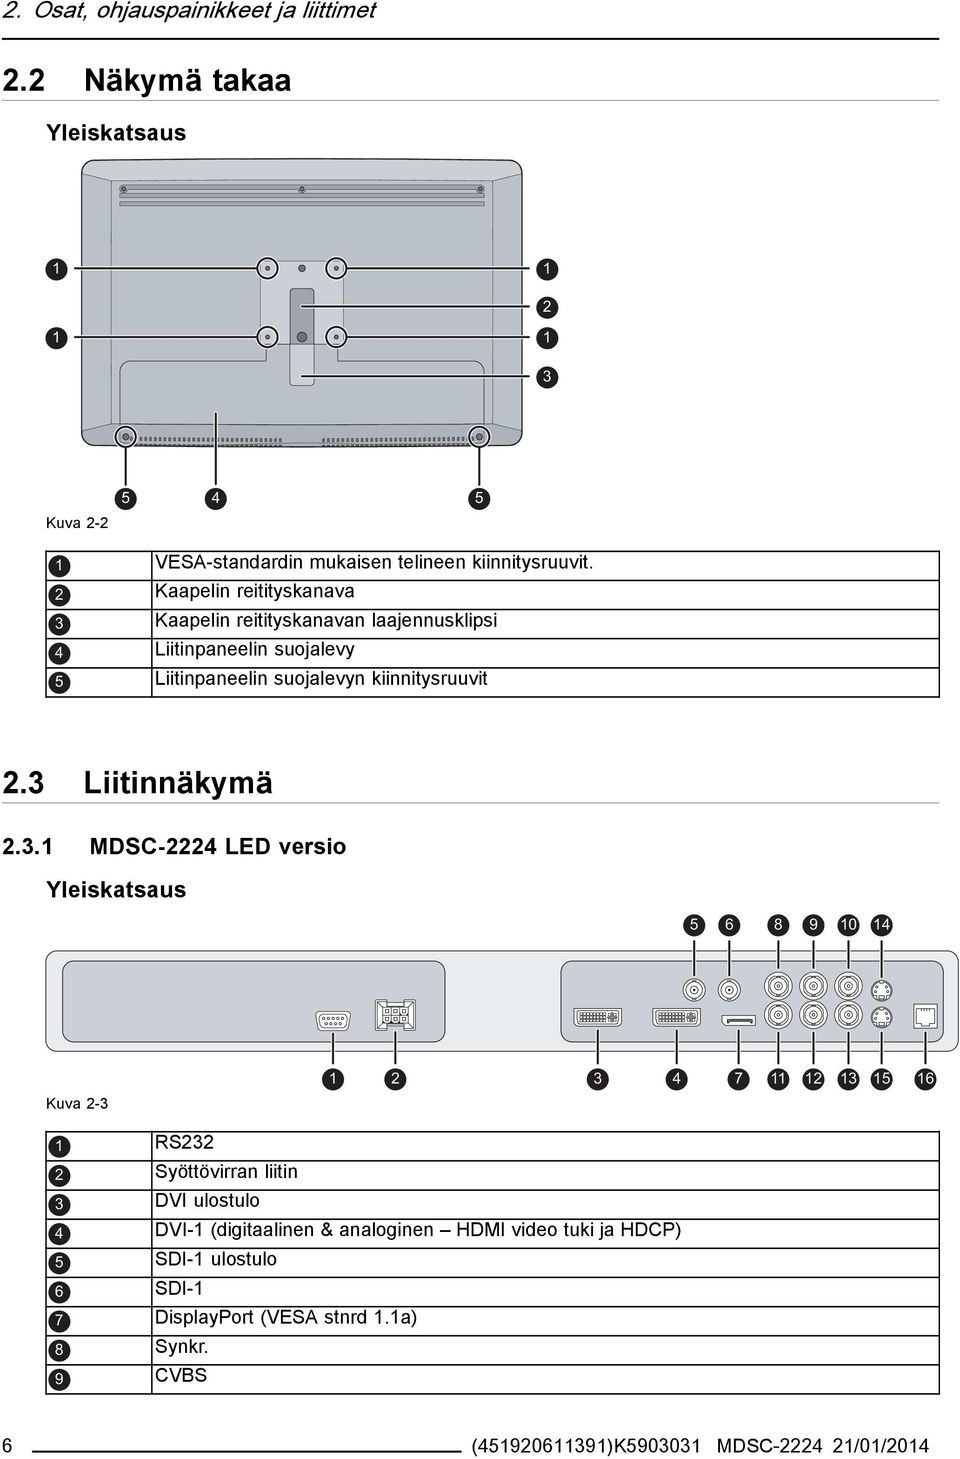 3 Liitinnäkymä 2.3.1 MDSC-2224 LED versio Yleiskatsaus 5 1 2 3 4 6 7 8 9 10 14 11 12 13 15 16 Kuva 2-3 6 1 RS232 2 3 Syöttövirran liitin DVI ulostulo 4